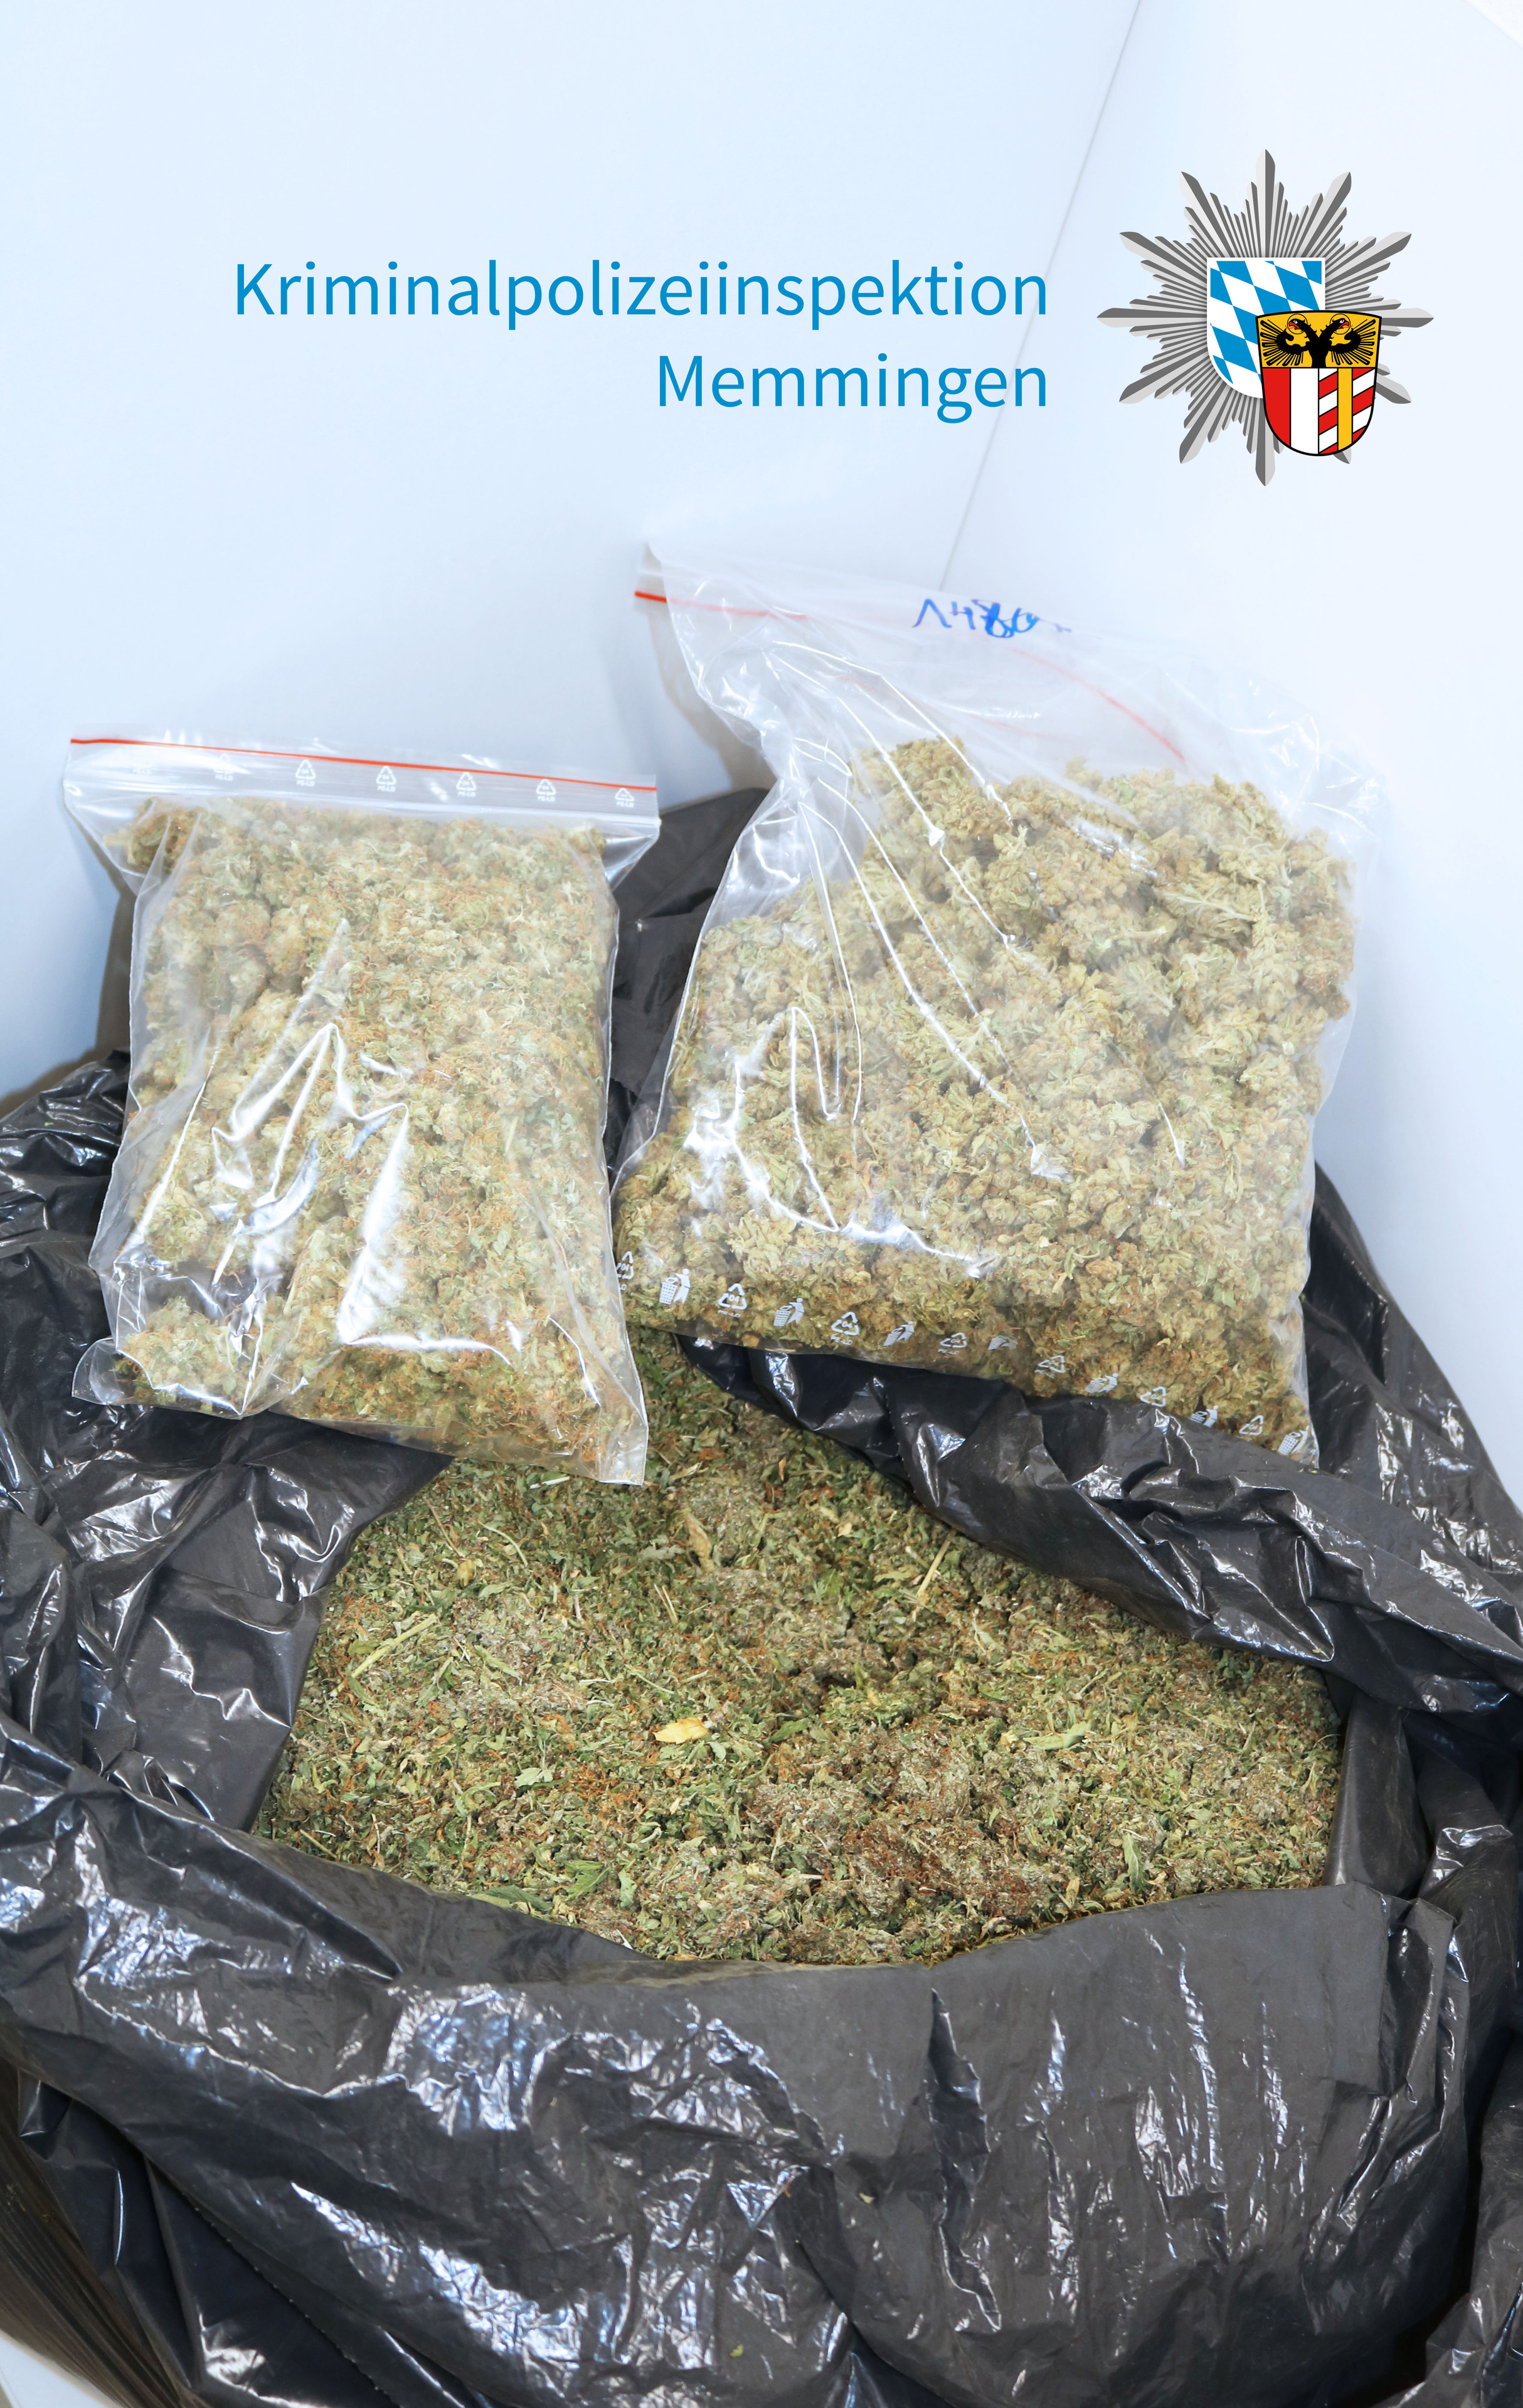 5,4 Kilo Gras: Professionelle Marihuana-Aufzuchtanlage entdeckt